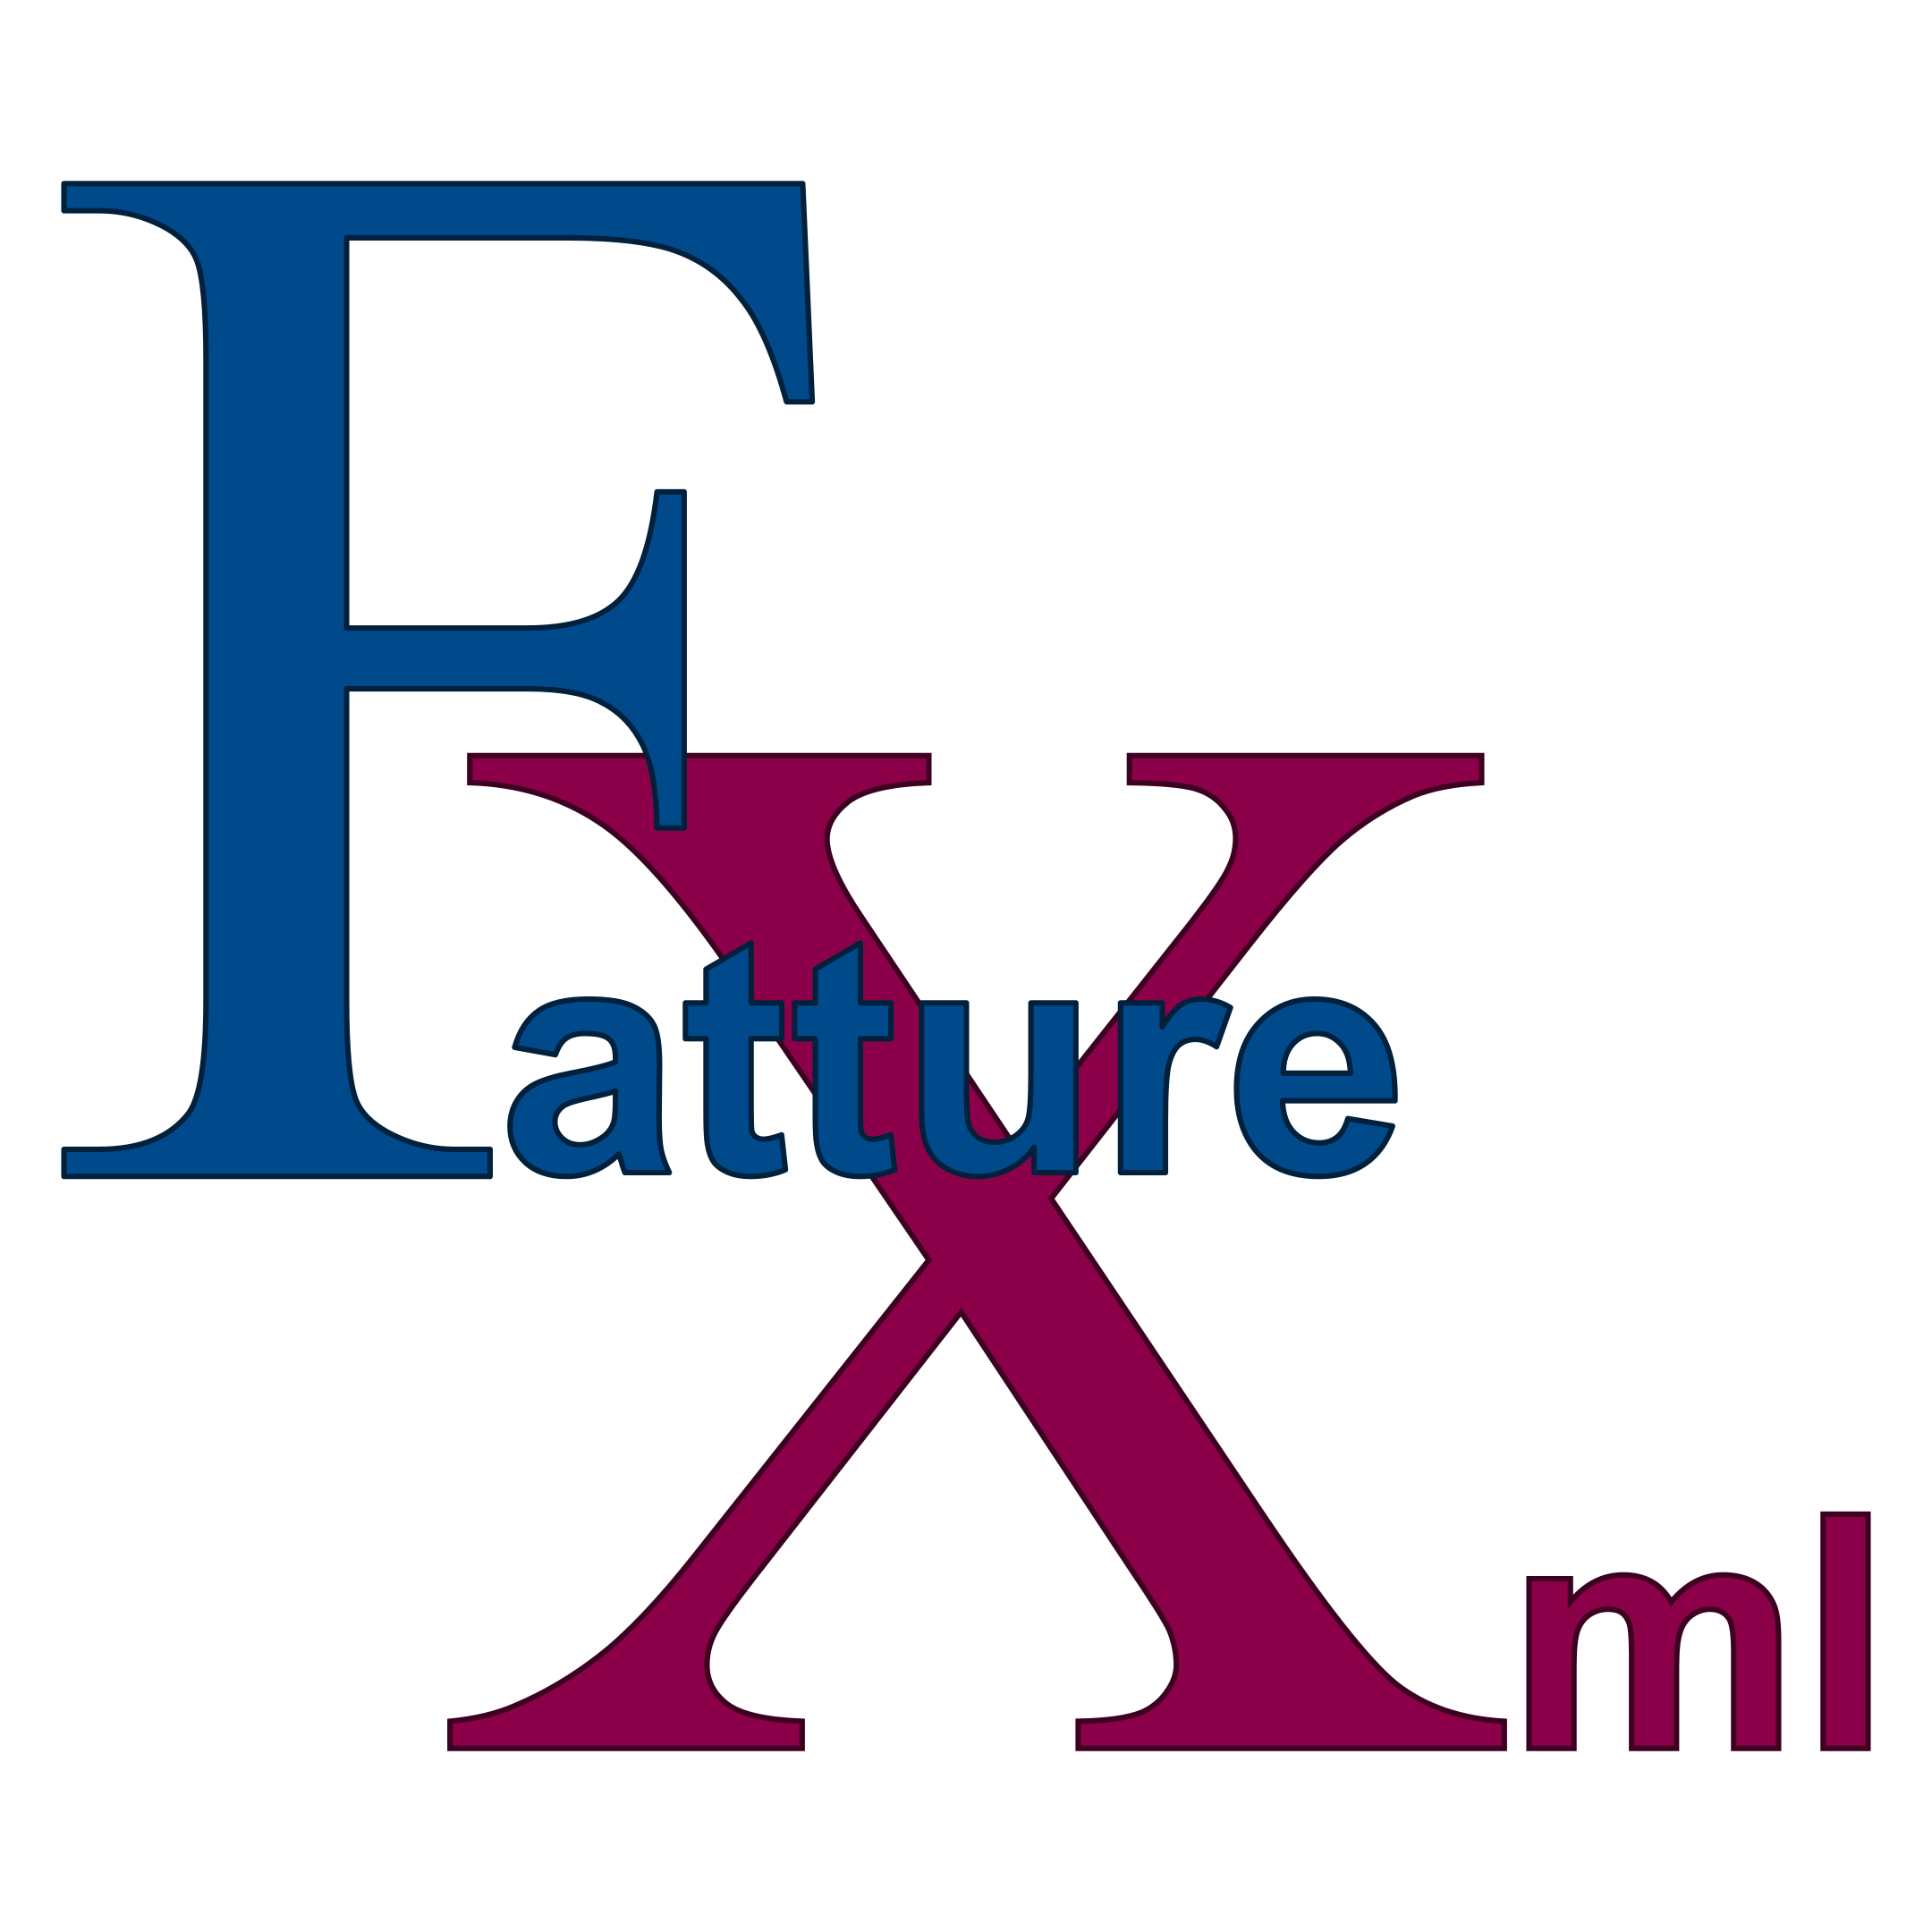 FattureXML